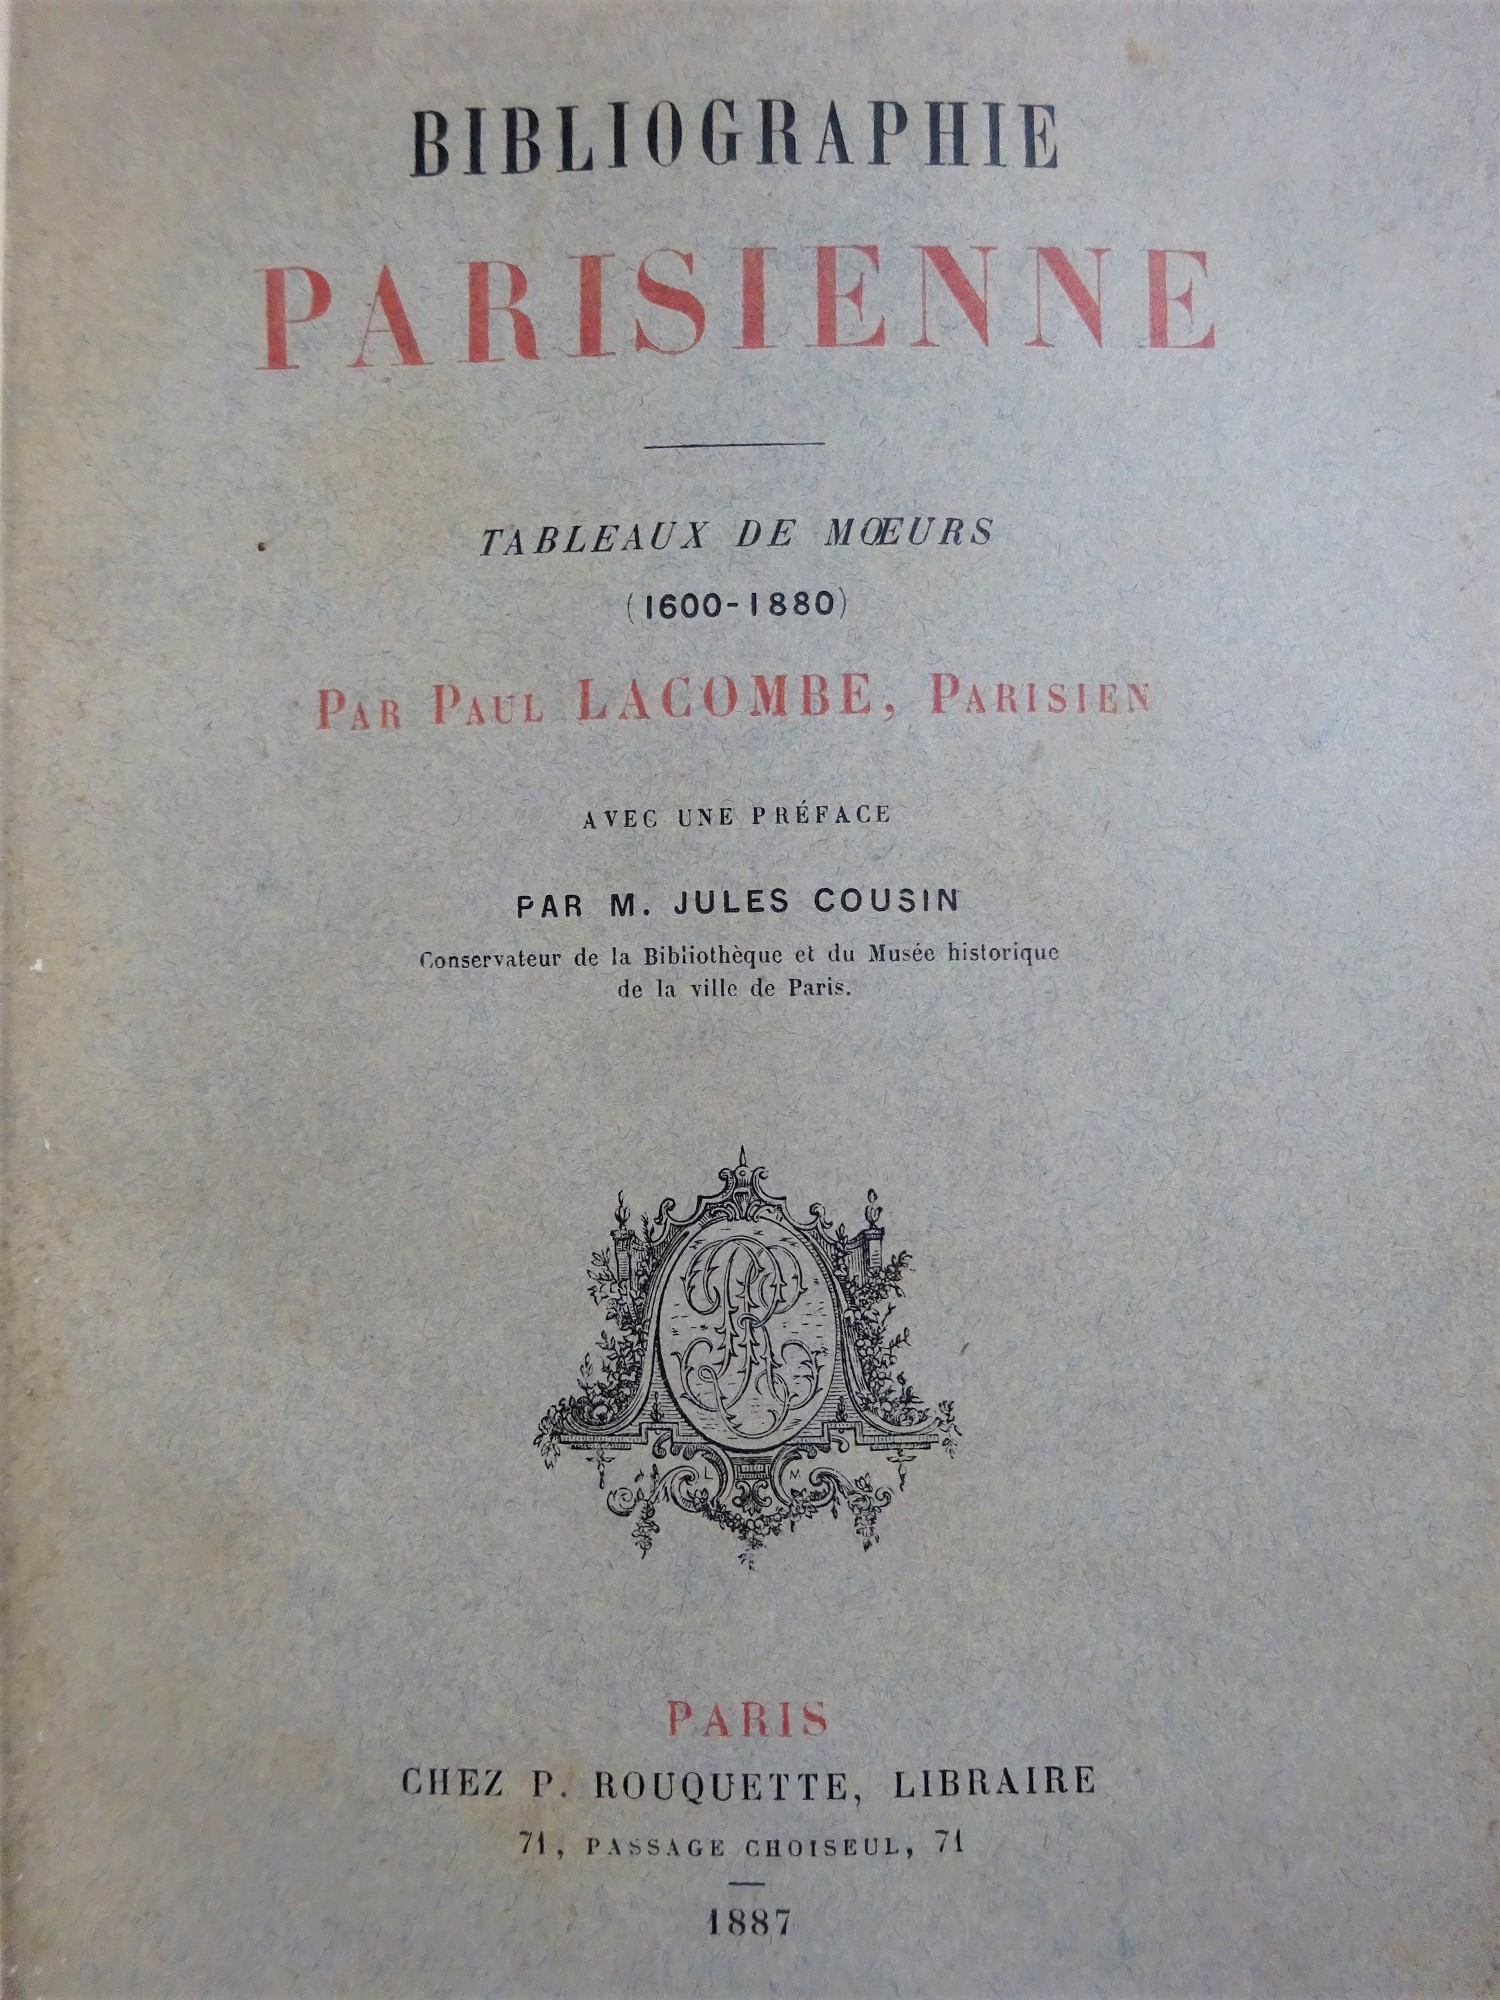 Bibliographie parisienne